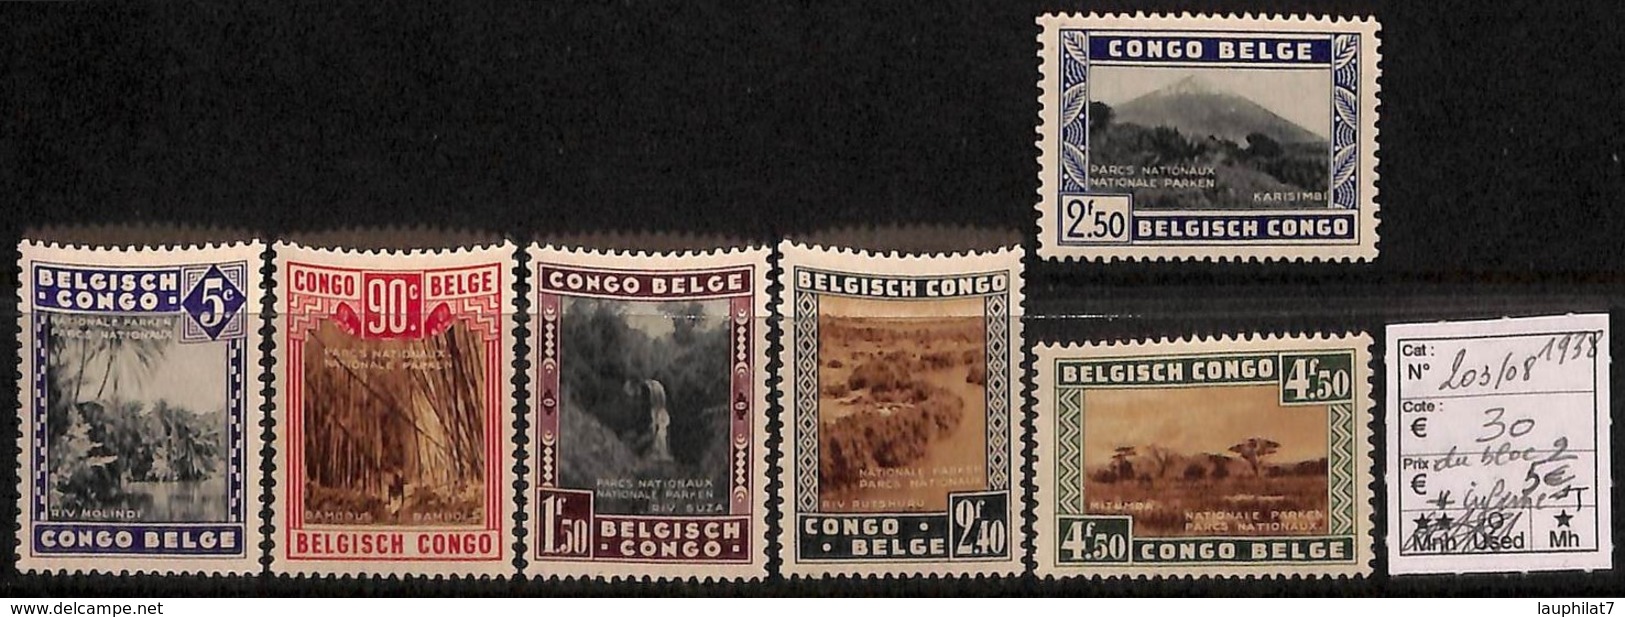 [814487]TB//*/Mh-c:30e-Congo Belge        1938 - N° 203/08, Parcs Nationaux, Paysages, SC, */mh Légère - Neufs